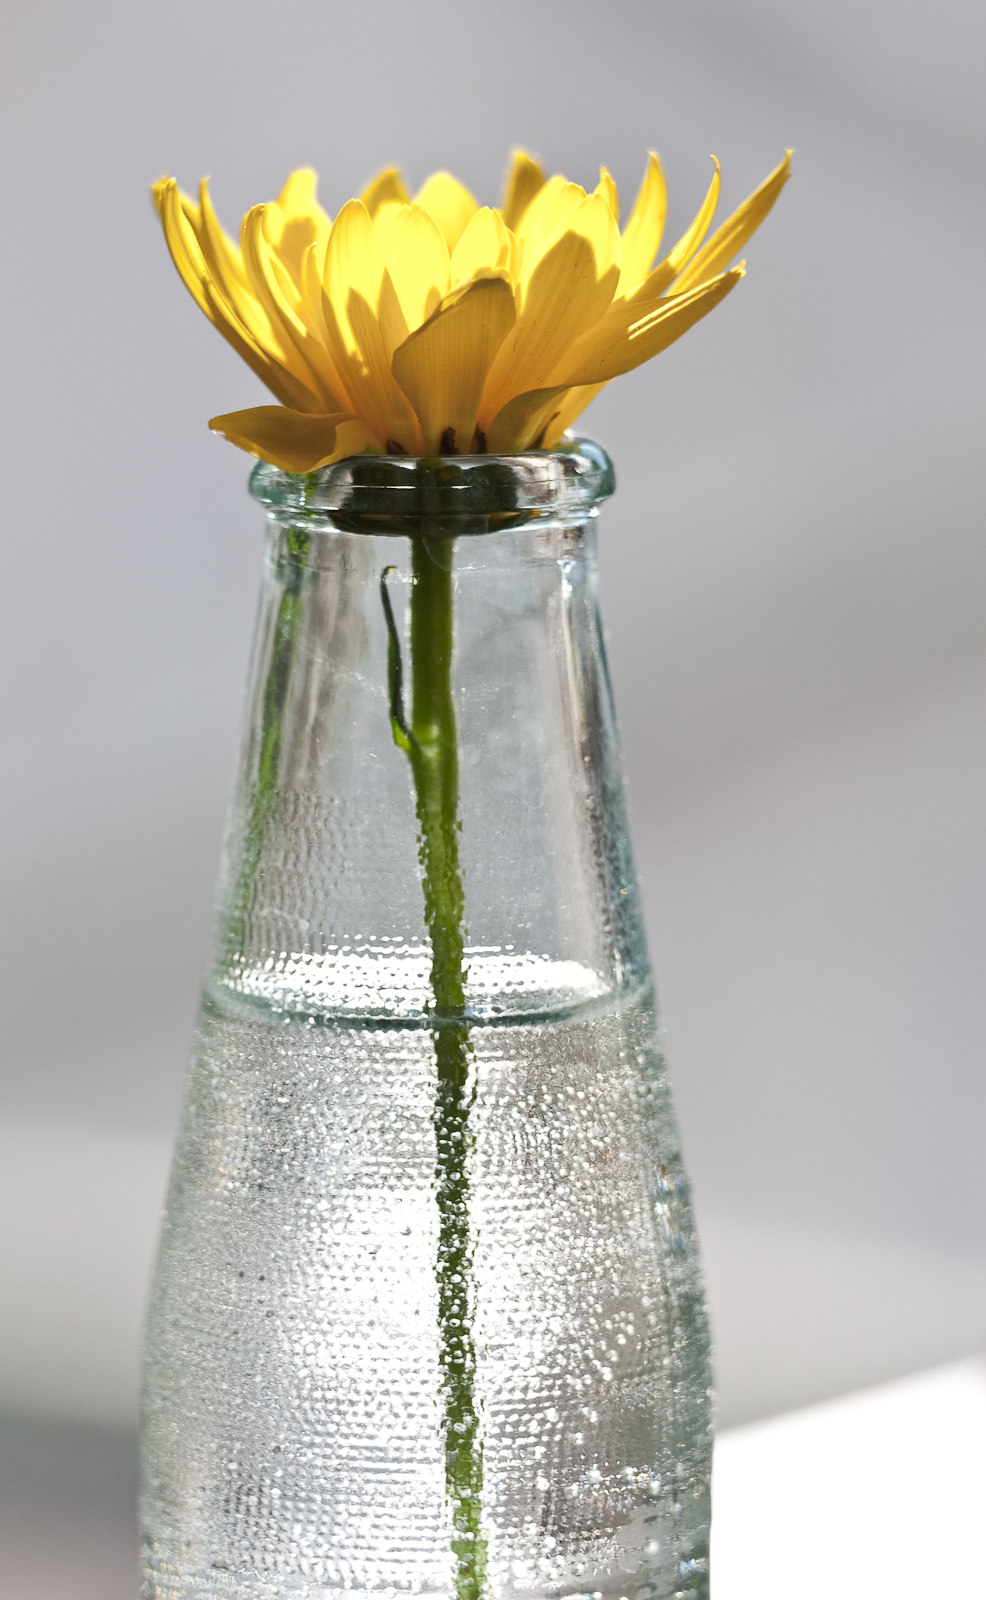 Virág üvegben 4